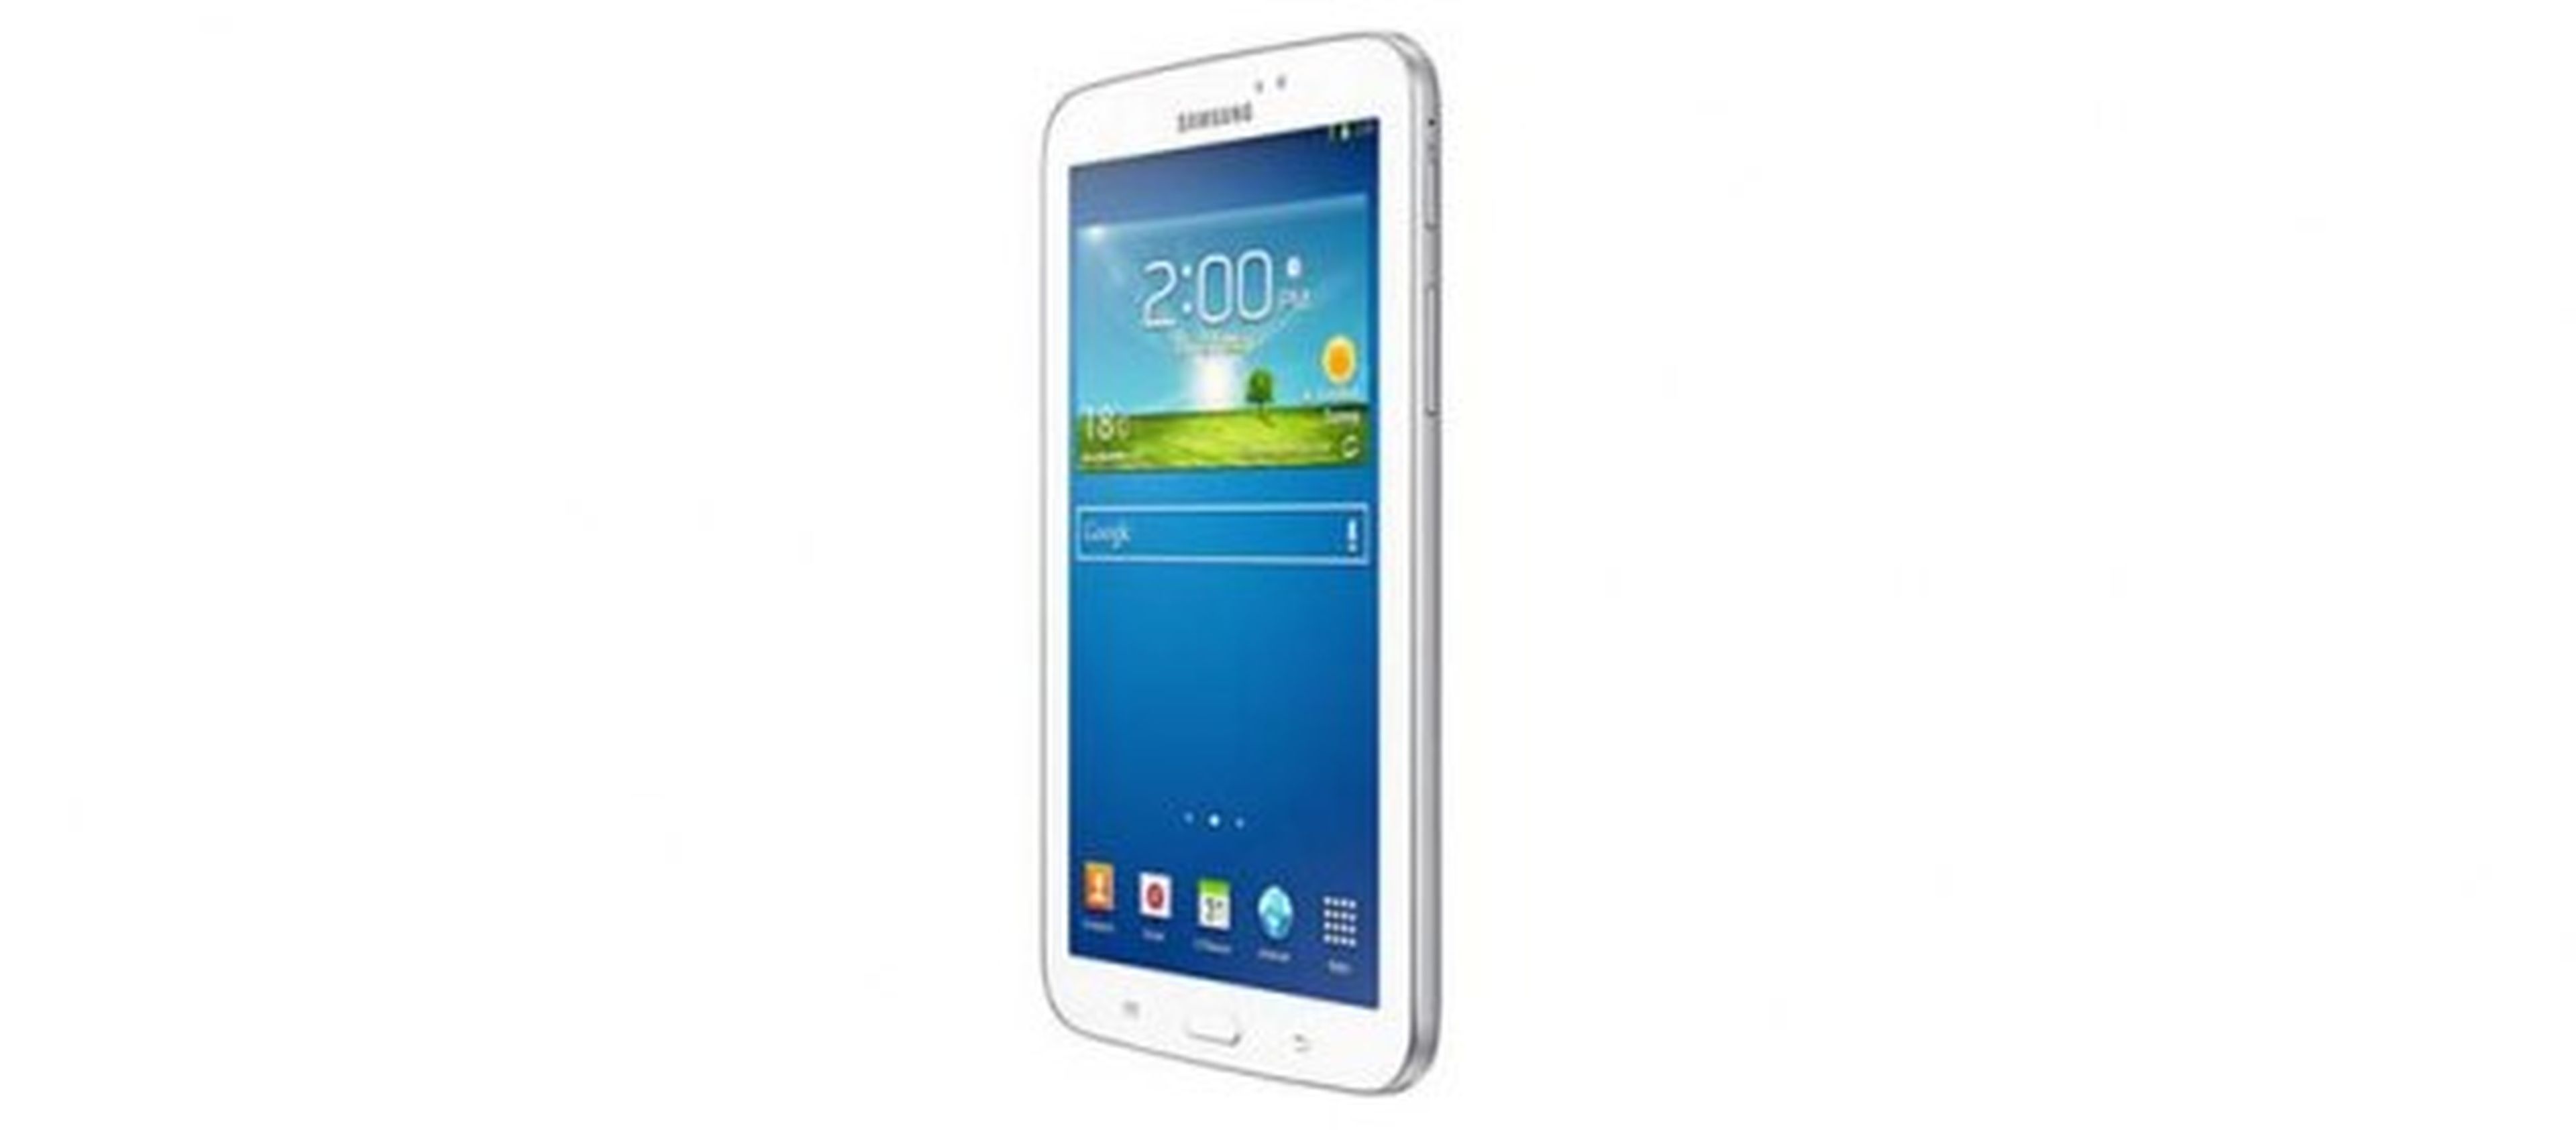 Familia de tablets Samsung Galaxy Tab 3 a la venta en España partiendo de  199 euros